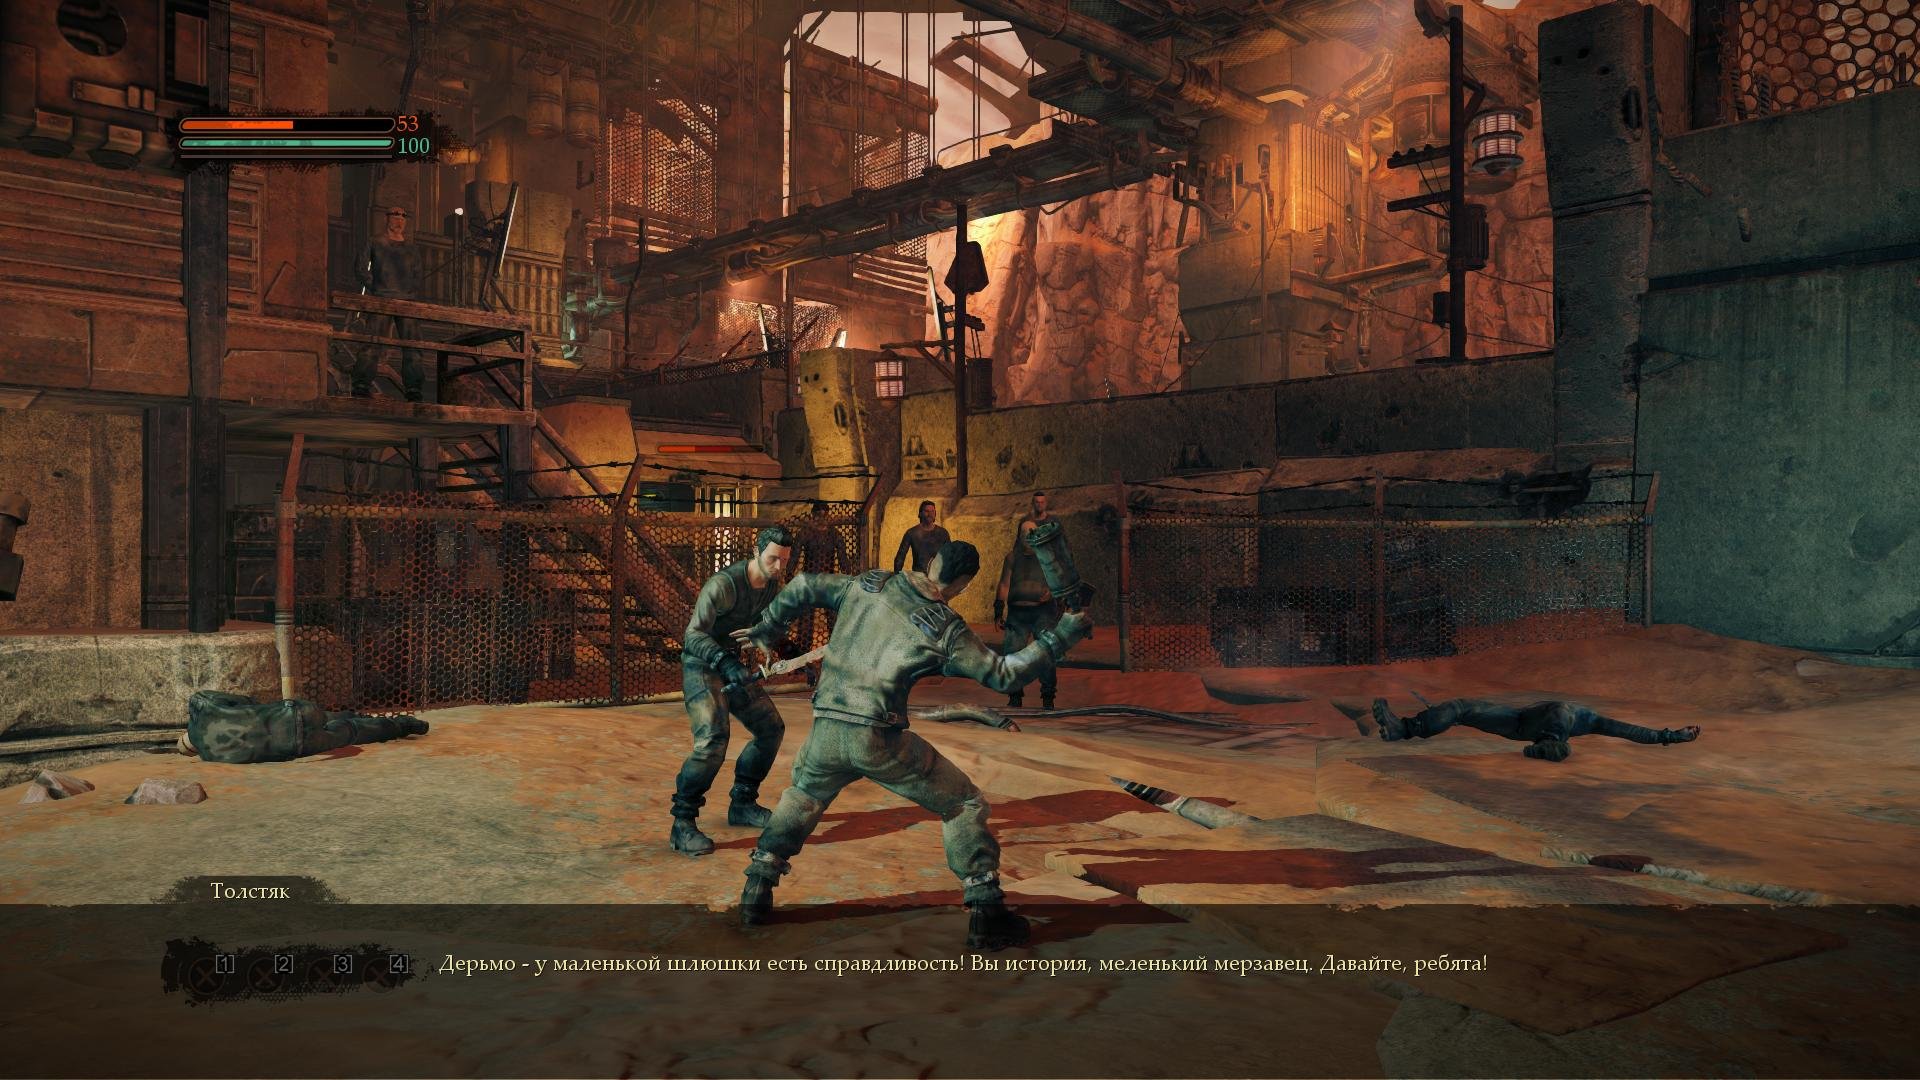 Скриншот 3 к игре Mars: War Logs v.1.0.1736 [GOG] (2013) PC | Лицензия